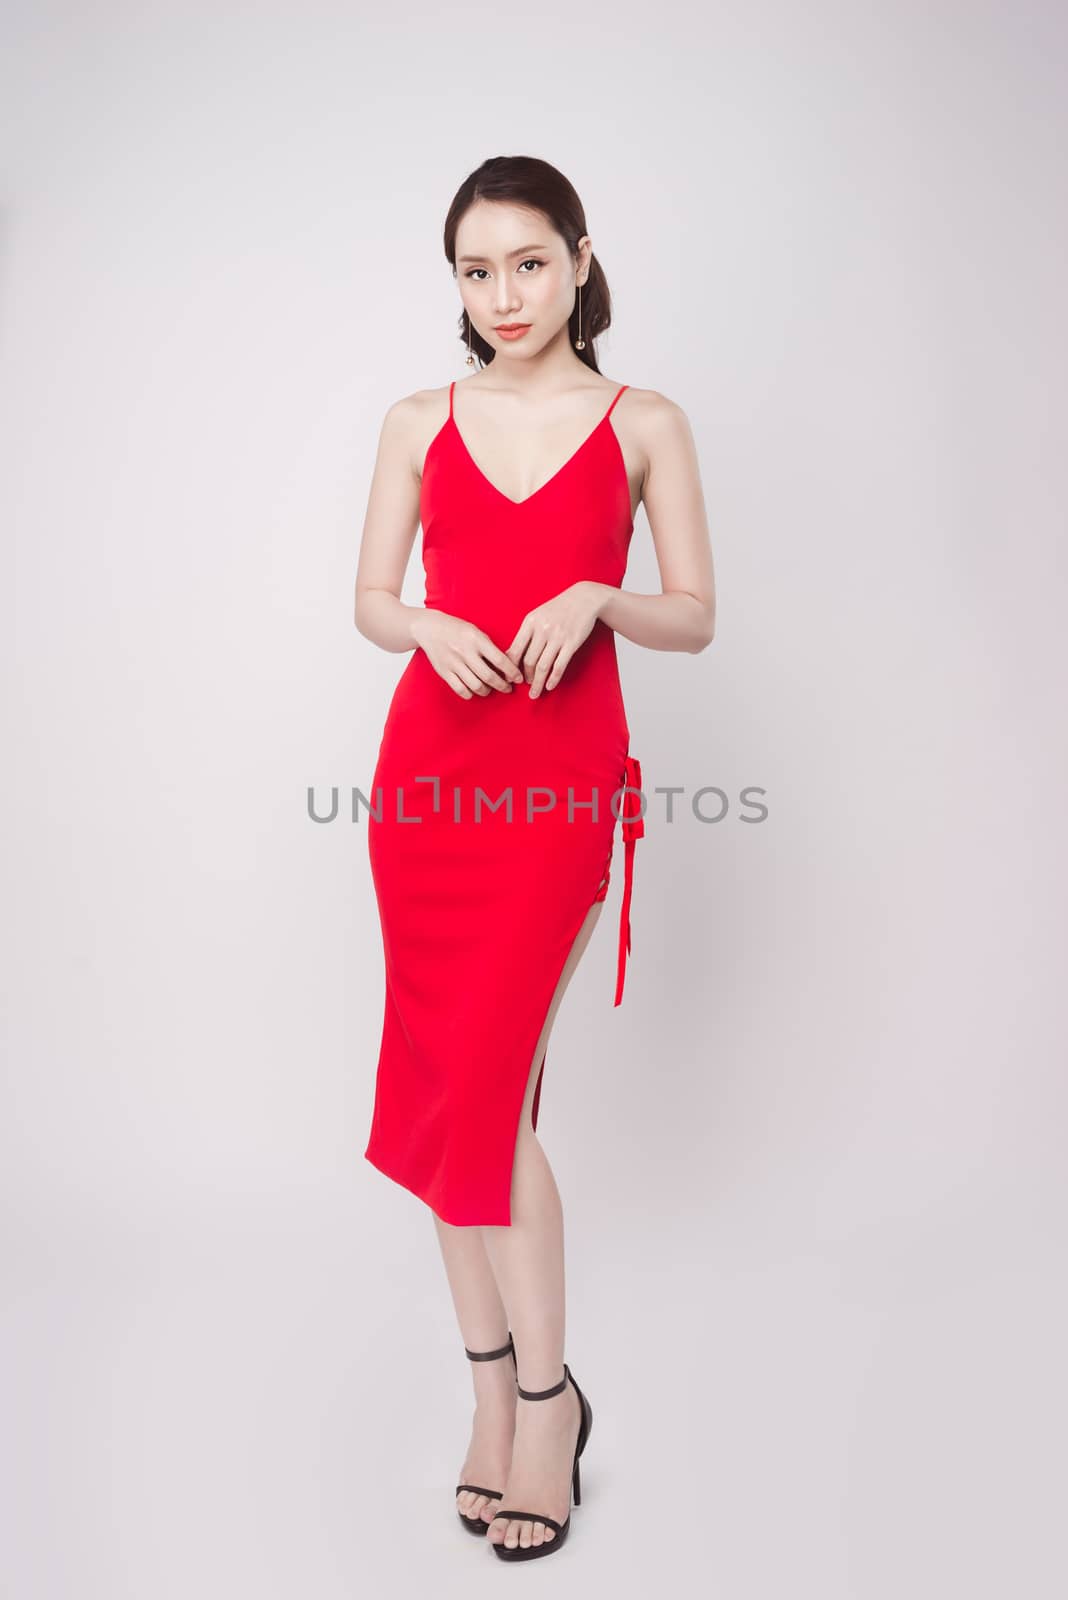 Beautiful stylish asian woman wearing red dress on grey background.